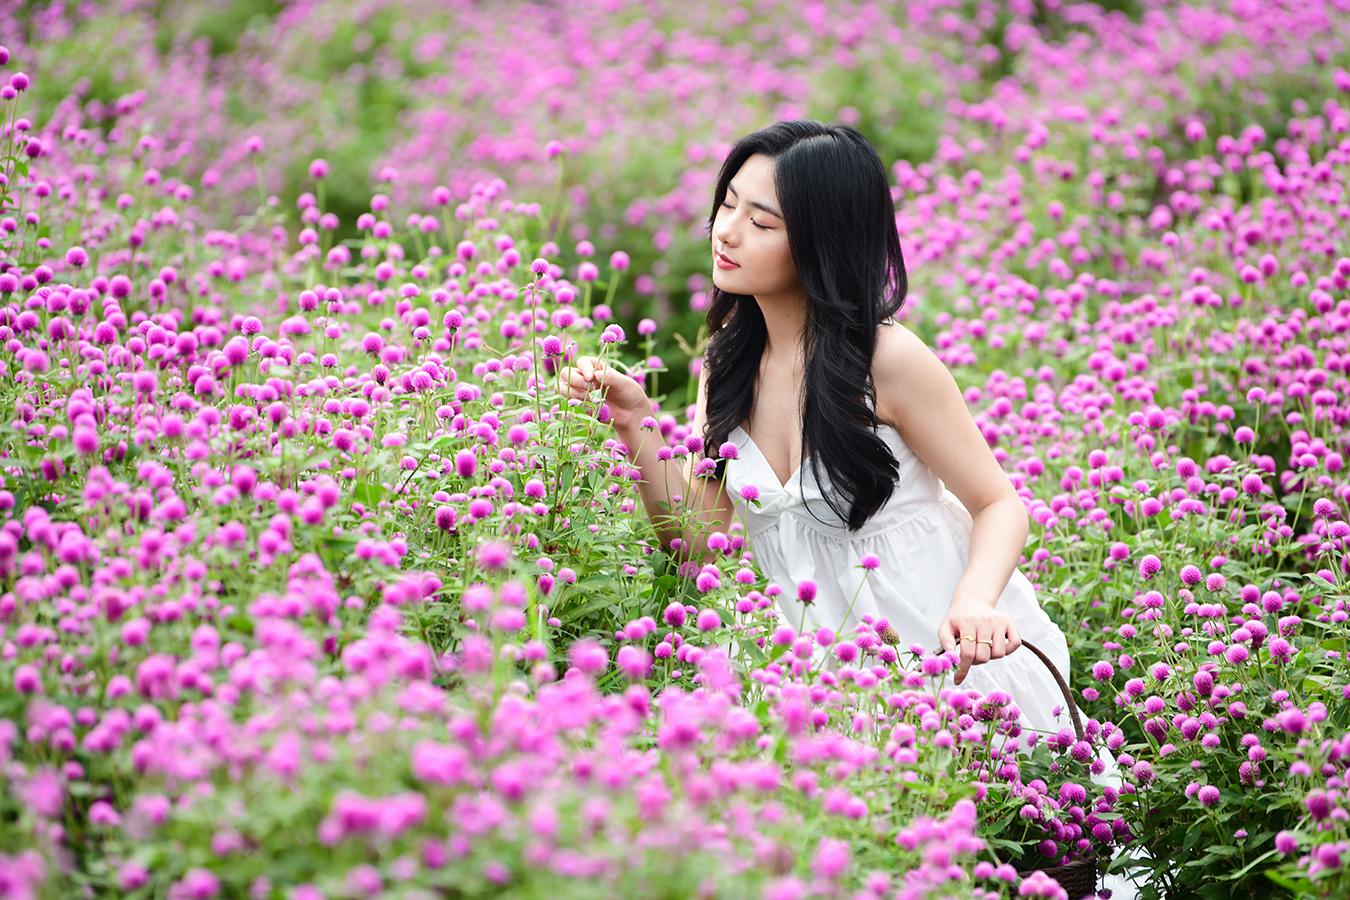 Cánh đồng hoa màu tím: Thiên nhiên tràn đầy sức sống và màu sắc hấp dẫn với cánh đồng hoa màu tím tuyệt đẹp. Đây là một trong những bức ảnh đẹp nhất và quyến rũ nhất mà bạn đã từng thấy. Hãy cùng thưởng thức và tận hưởng vẻ đẹp của thiên nhiên trong bức ảnh này.